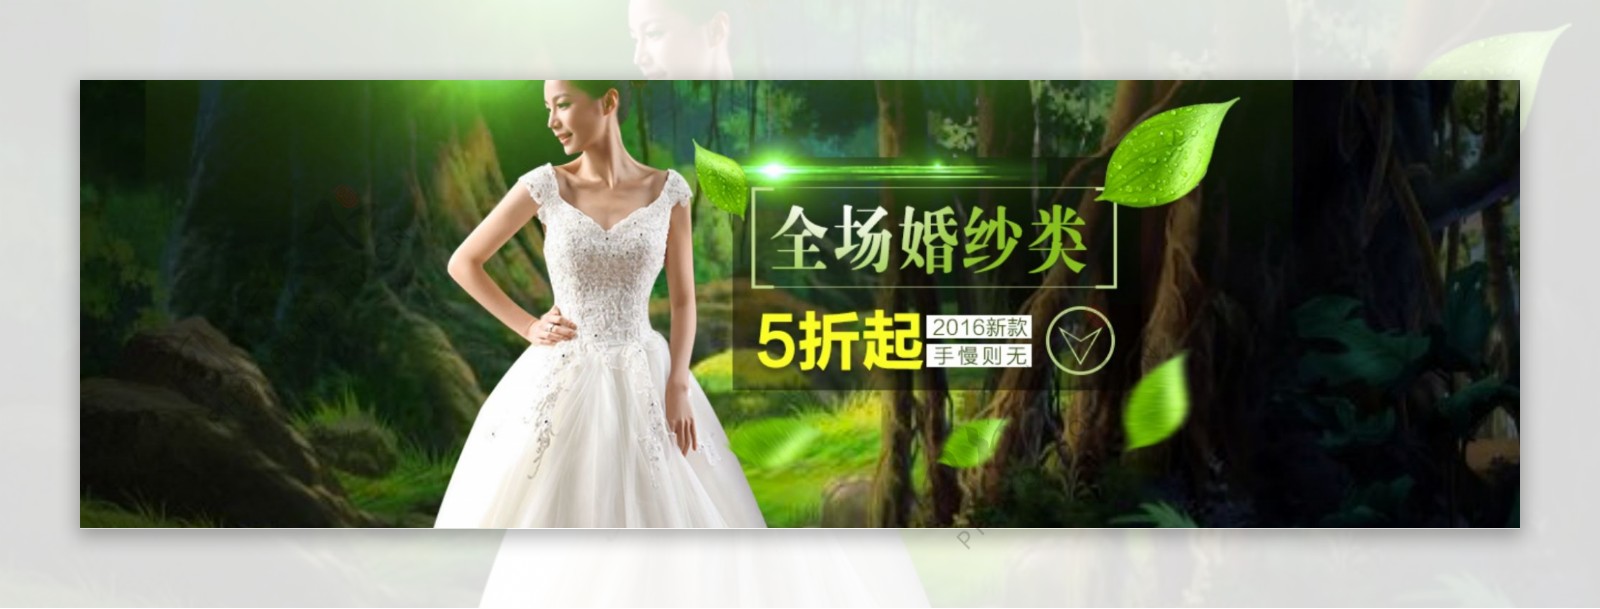 新娘婚纱婚礼海报